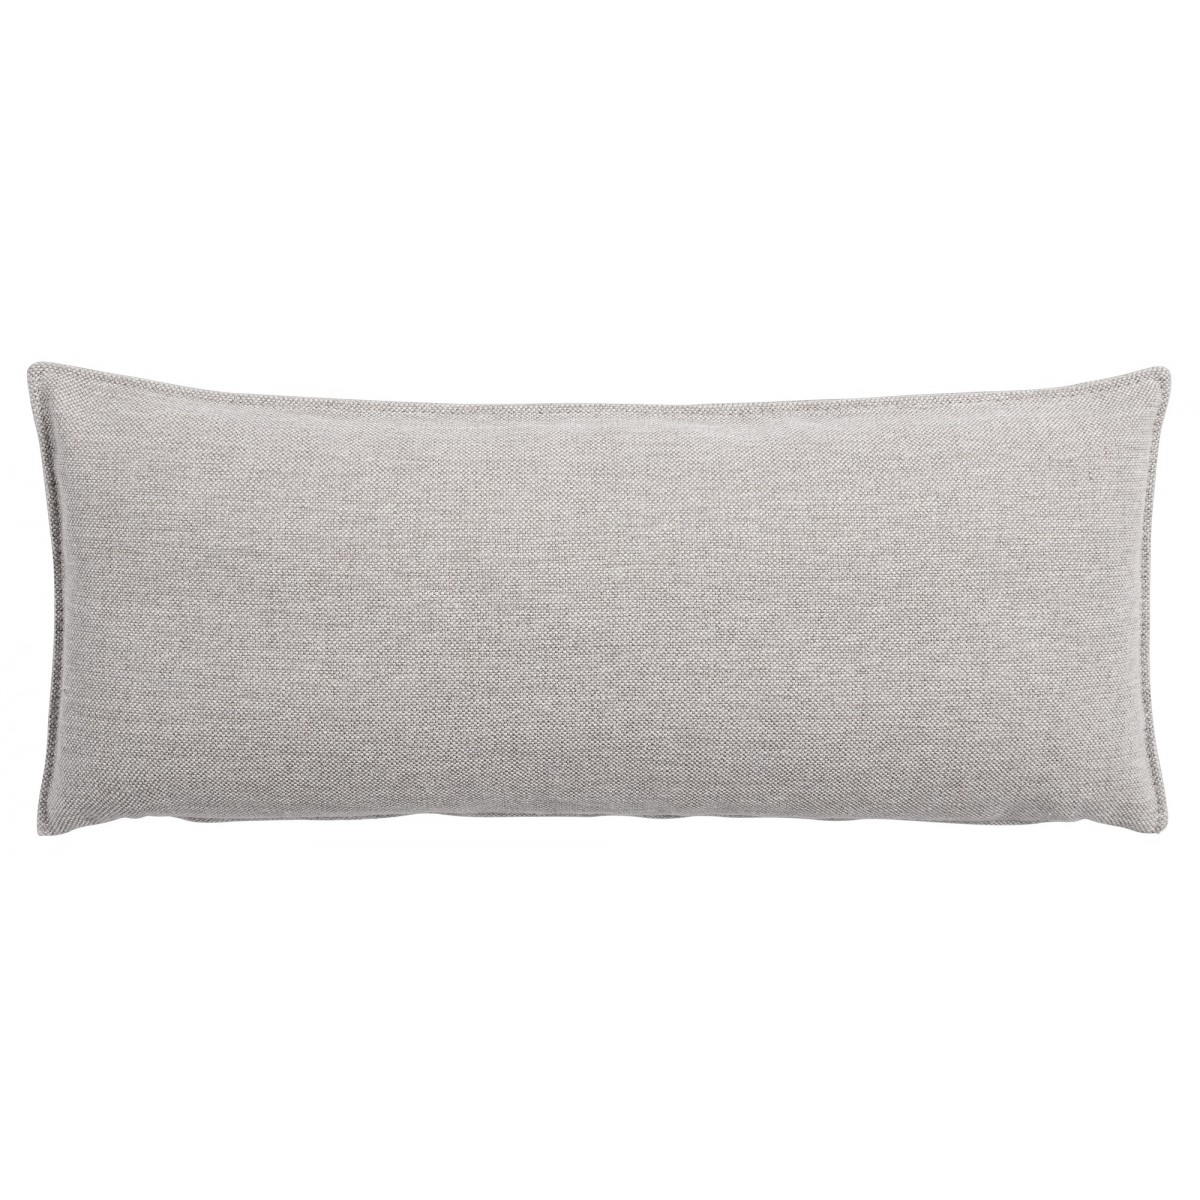 Clay 12 – In Situ cushion – 70 x 30 cm